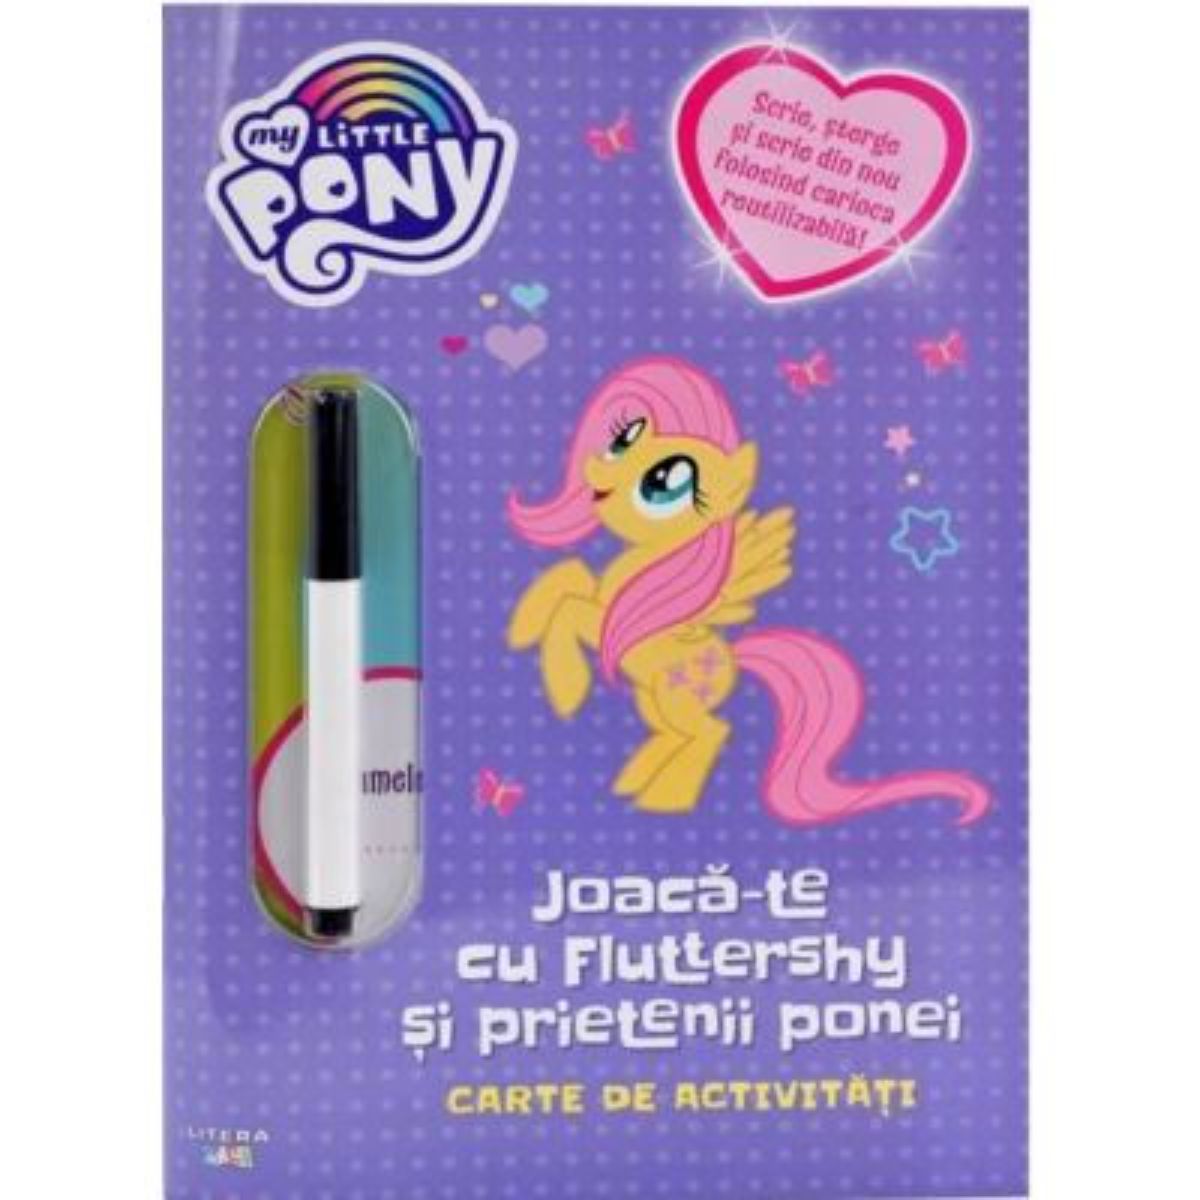 My Little Pony, Joaca-te cu fluttershy si prietenii ponei, Scrie si sterge carti imagine 2022 protejamcopilaria.ro